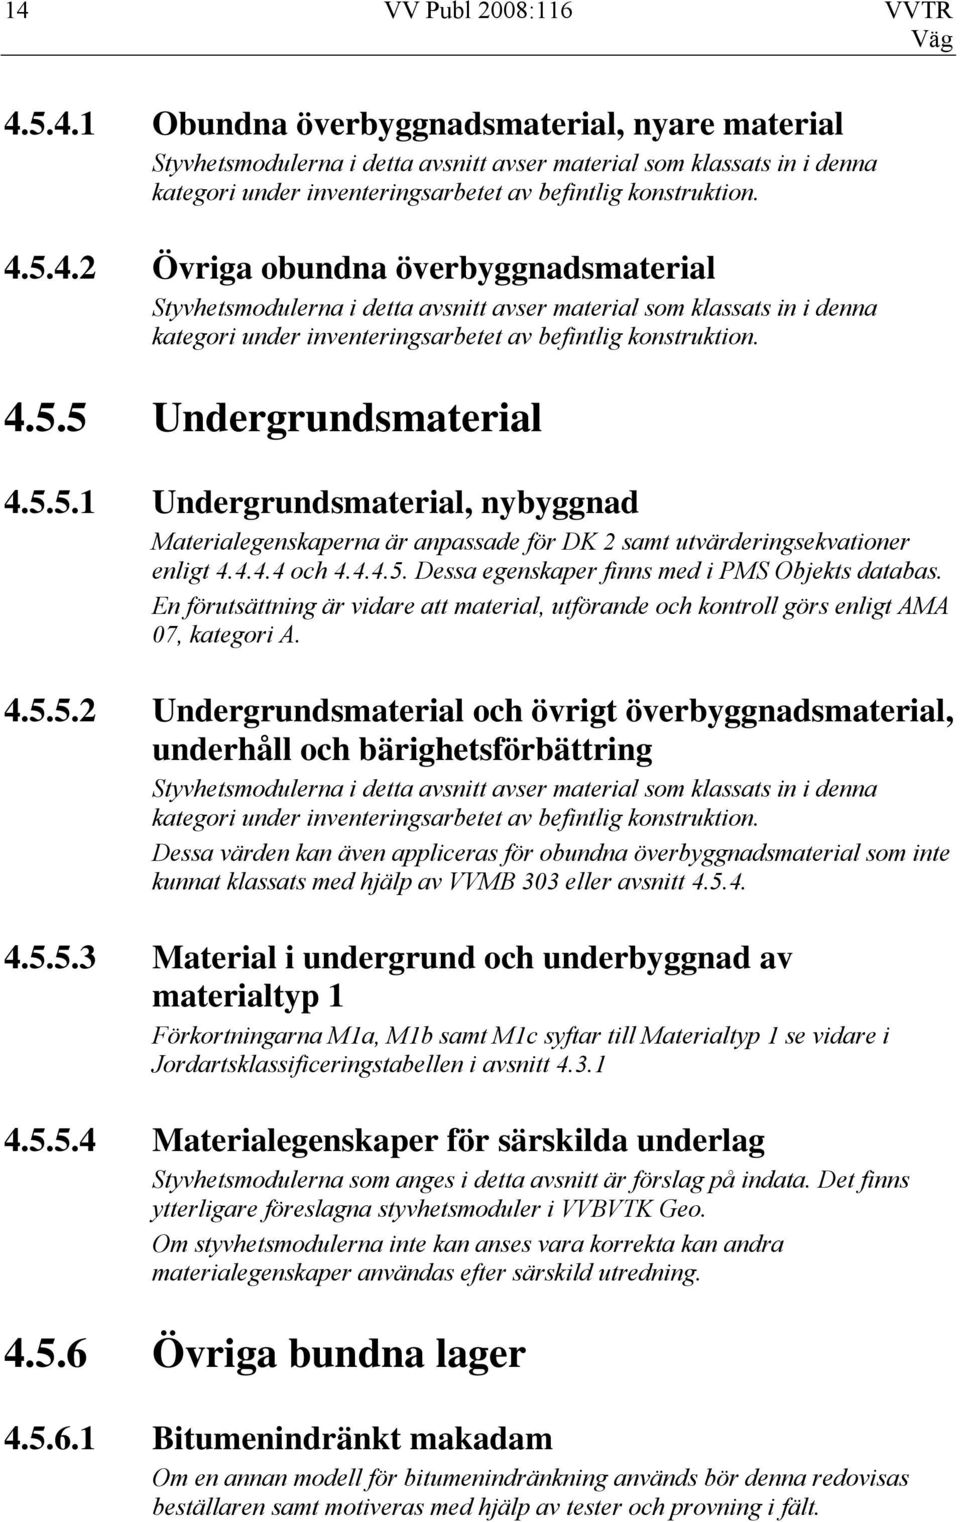 5.5.1 Undergrundsmaterial, nybyggnad Materialegenskaperna är anpassade för DK 2 samt utvärderingsekvationer enligt 4.4.4.4 och 4.4.4.5. Dessa egenskaper finns med i PMS Objekts databas.